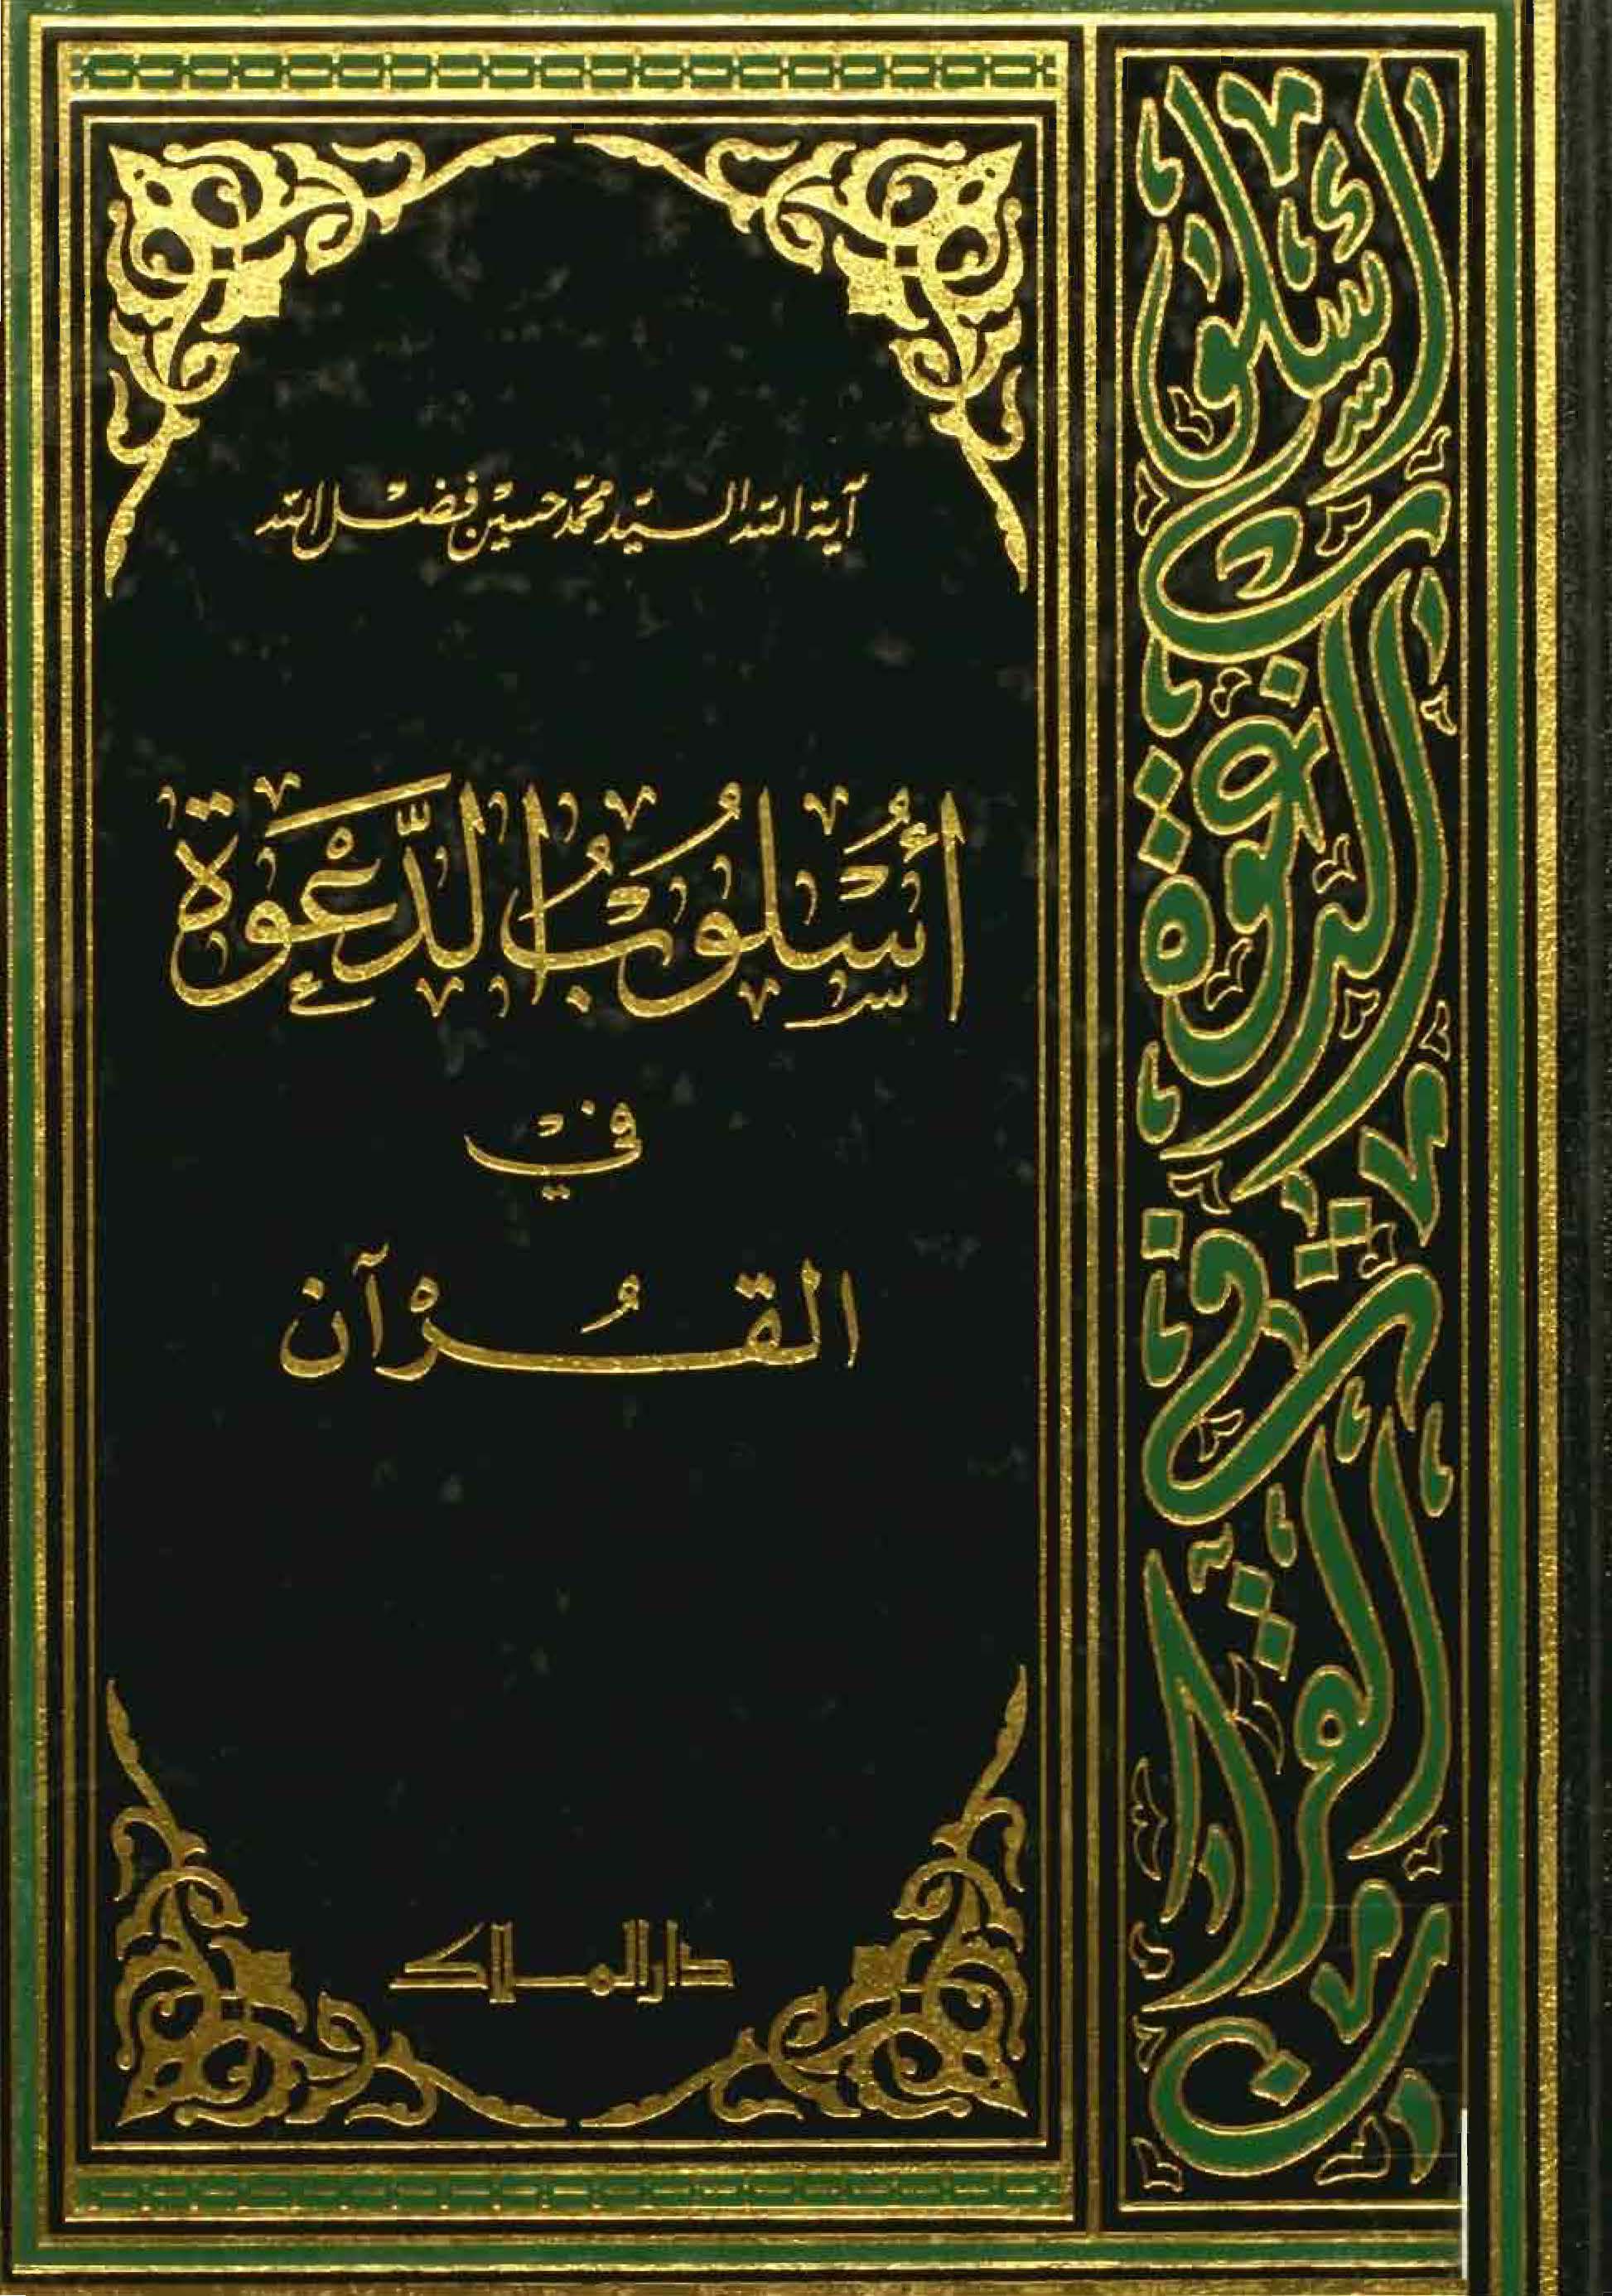 أسلوب الدعوة في القرآن